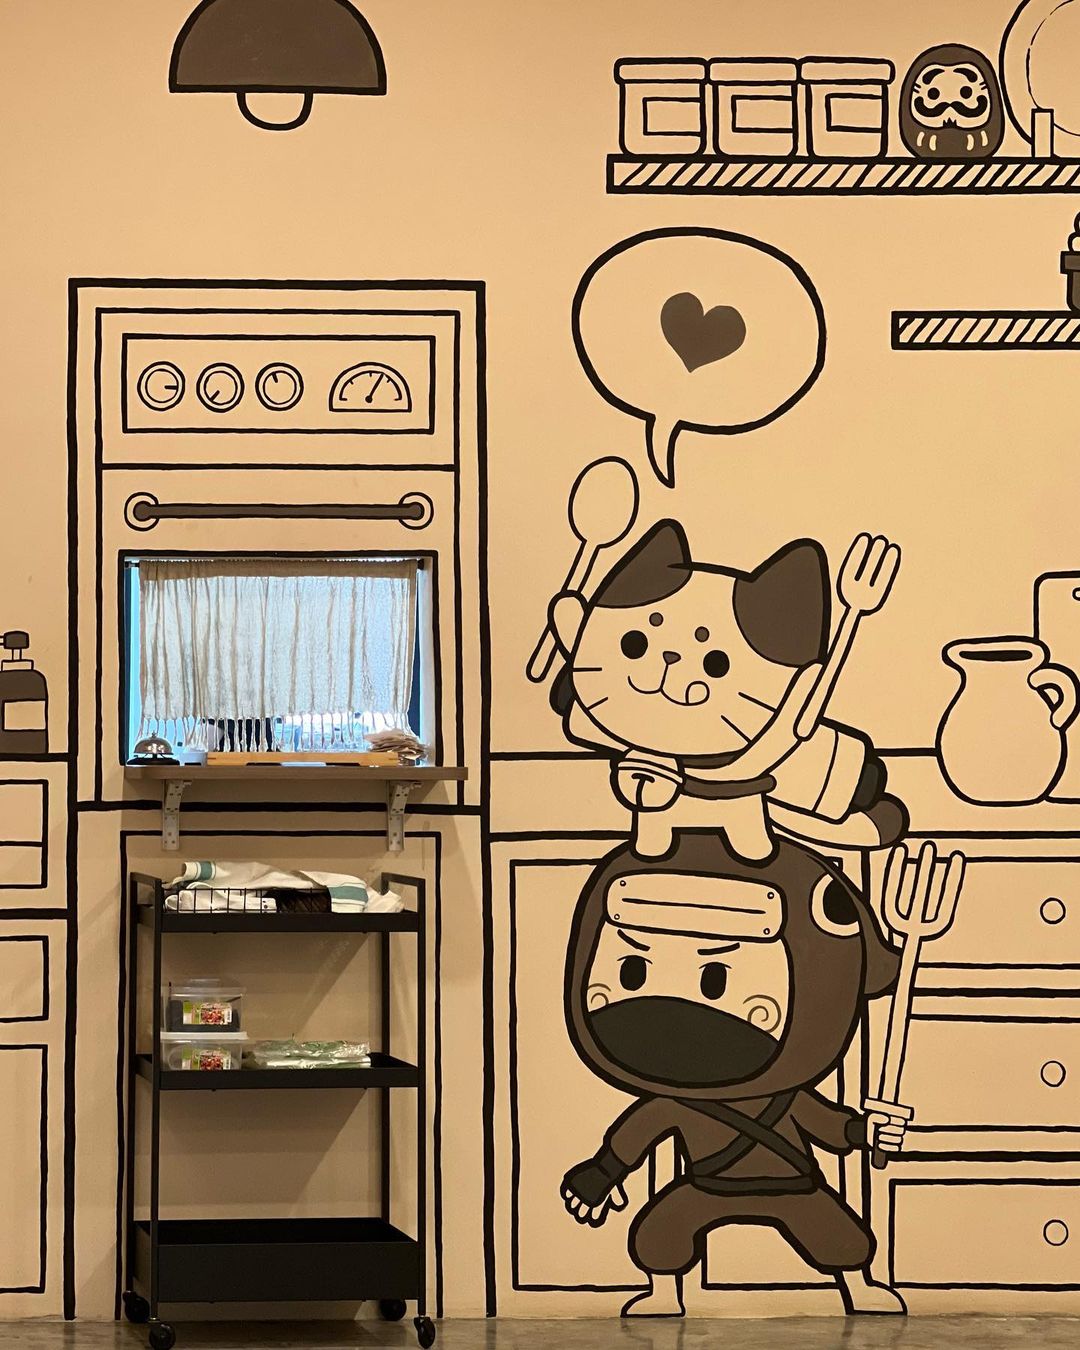 TwentyFour Cafe - A free-to-enter cat cafe in Johor Bahru - indoor illustrations